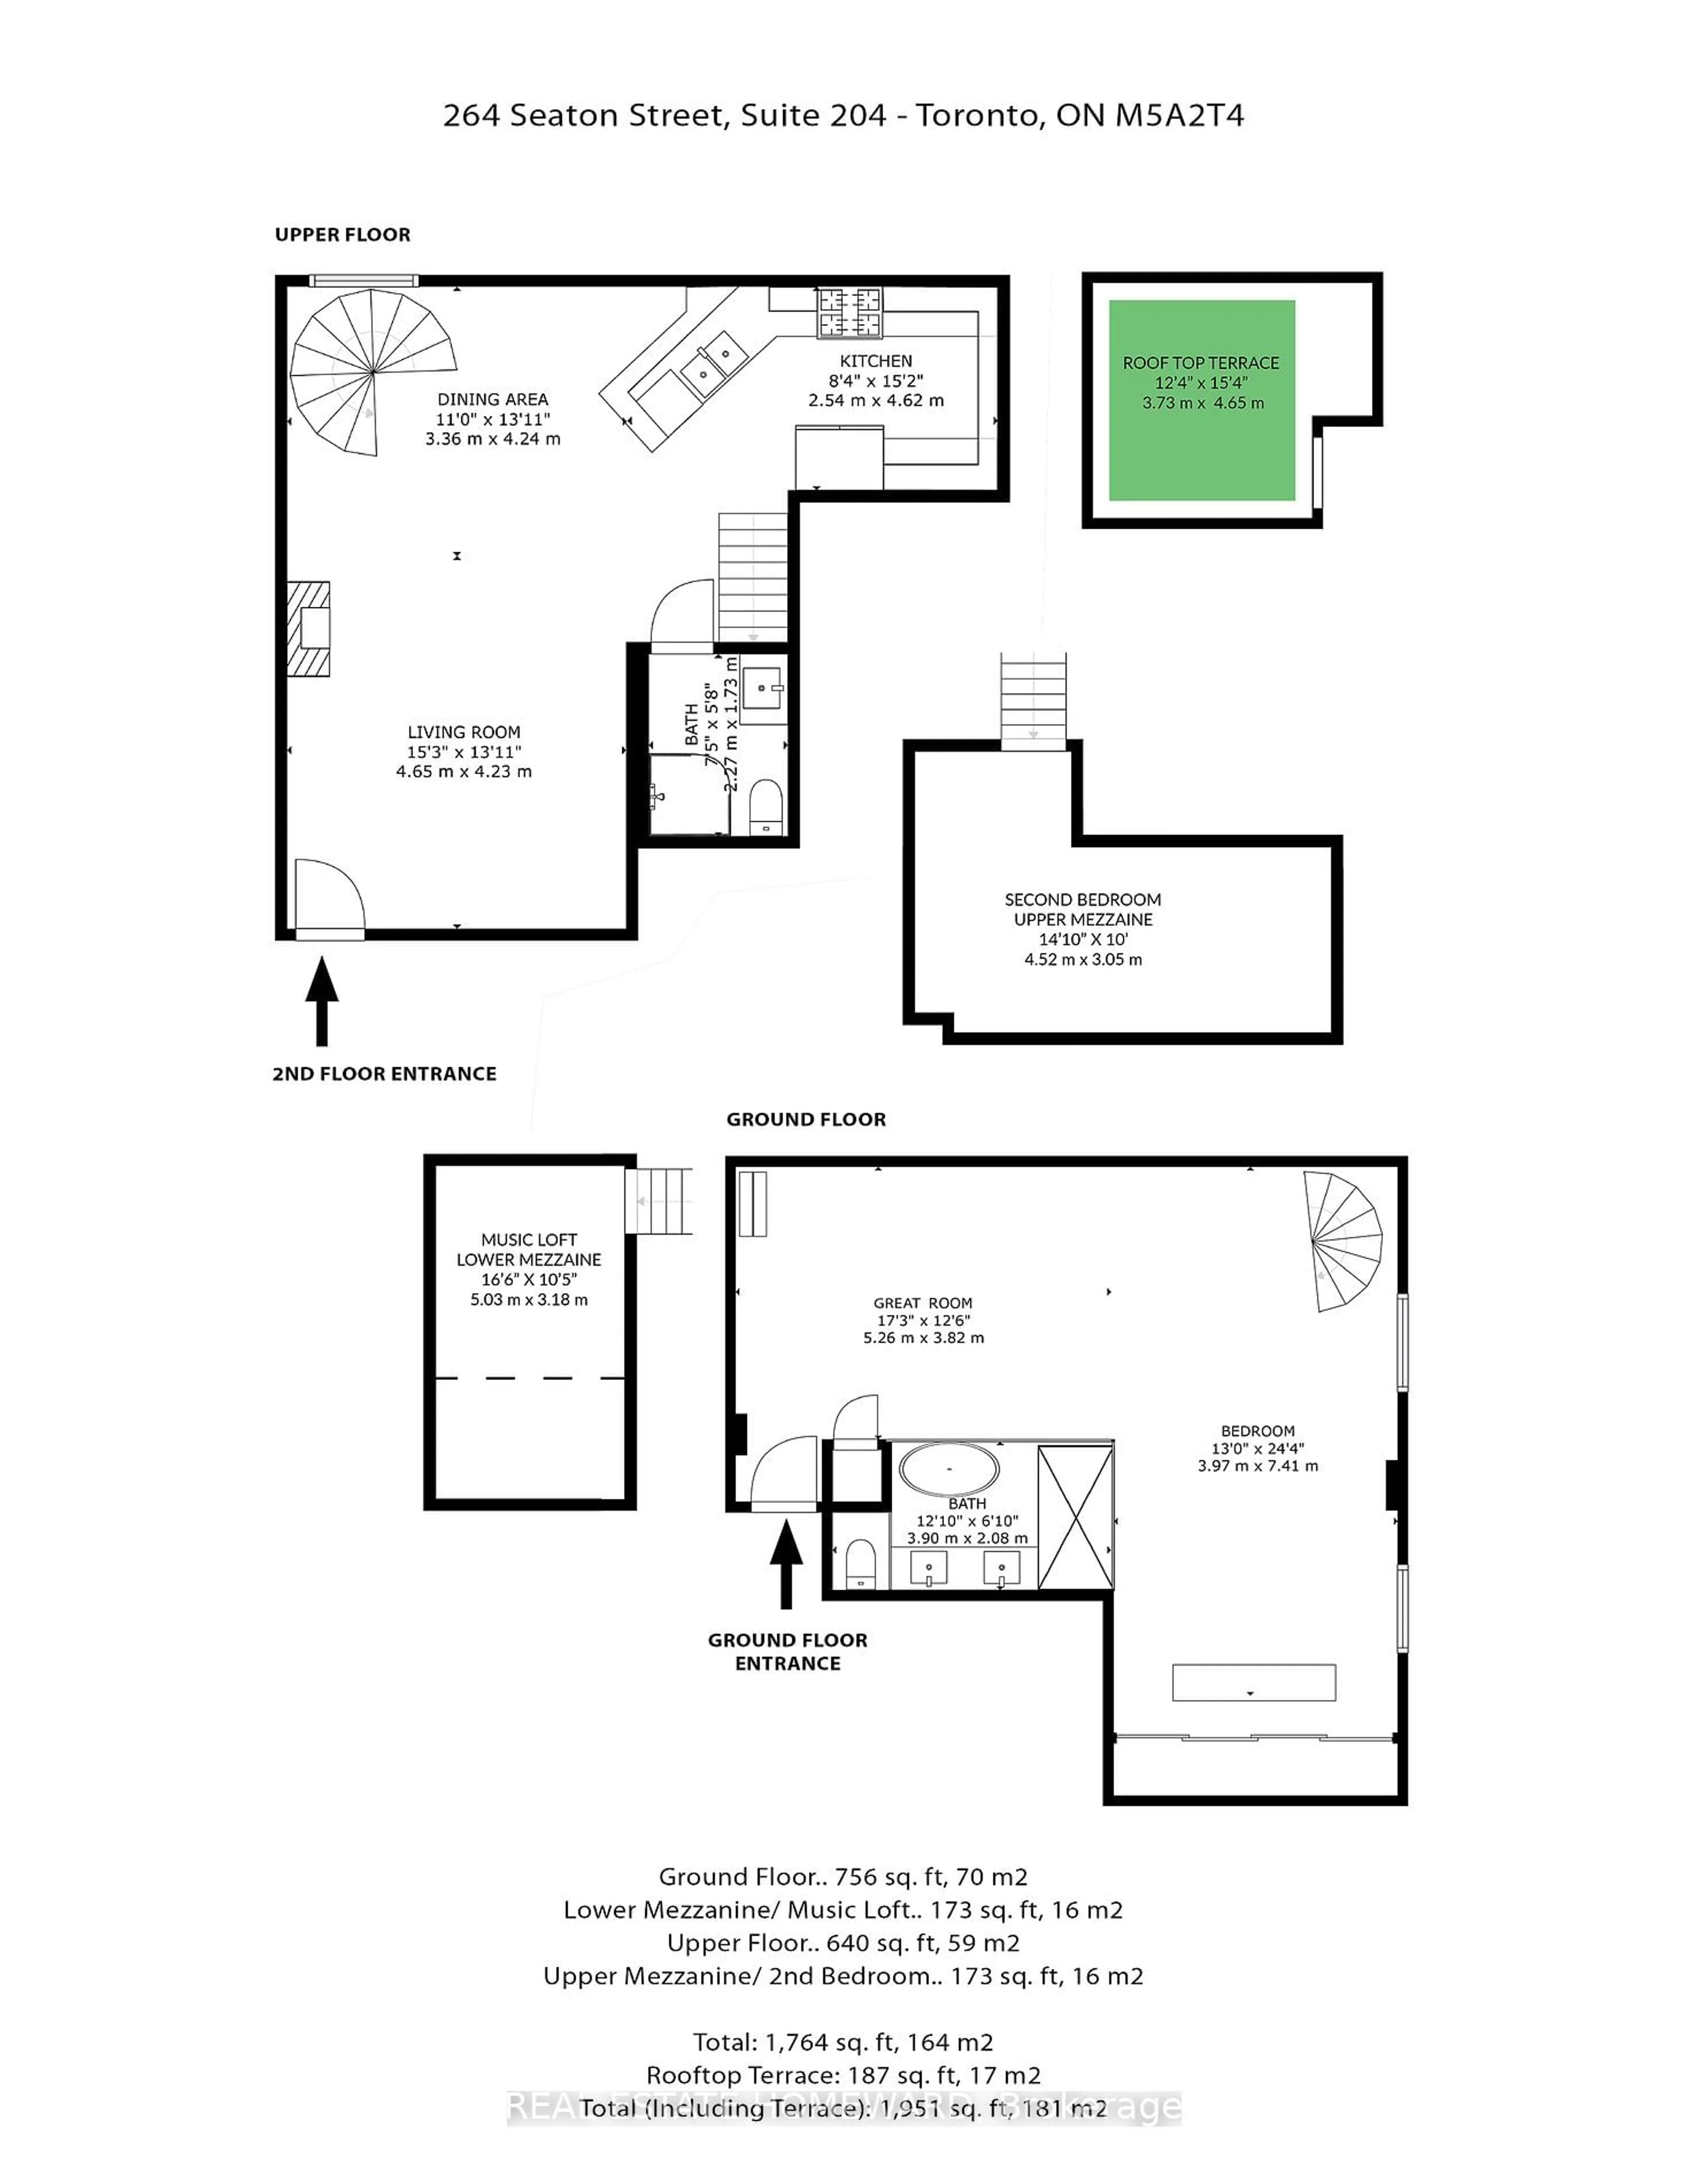 Floor plan for 264 Seaton St #204, Toronto Ontario M5A 2T4